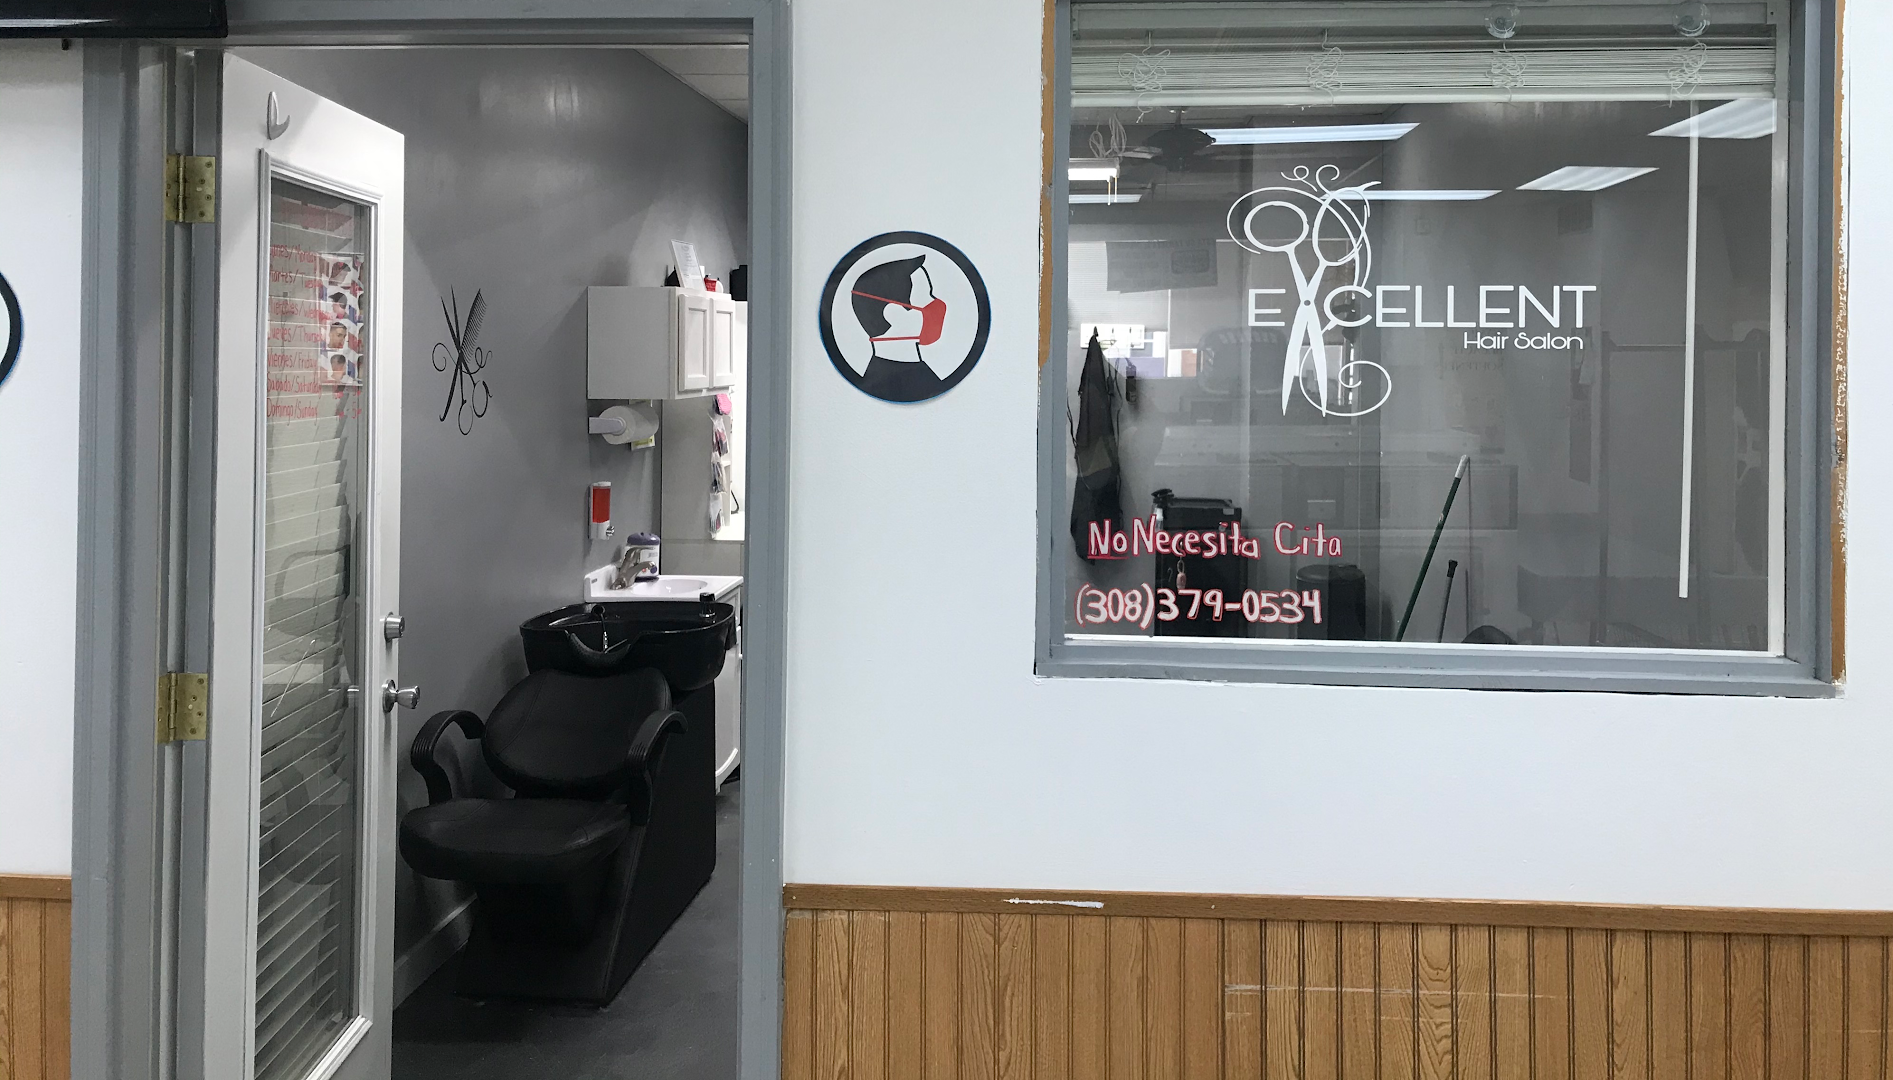 Excellent Hair Salon